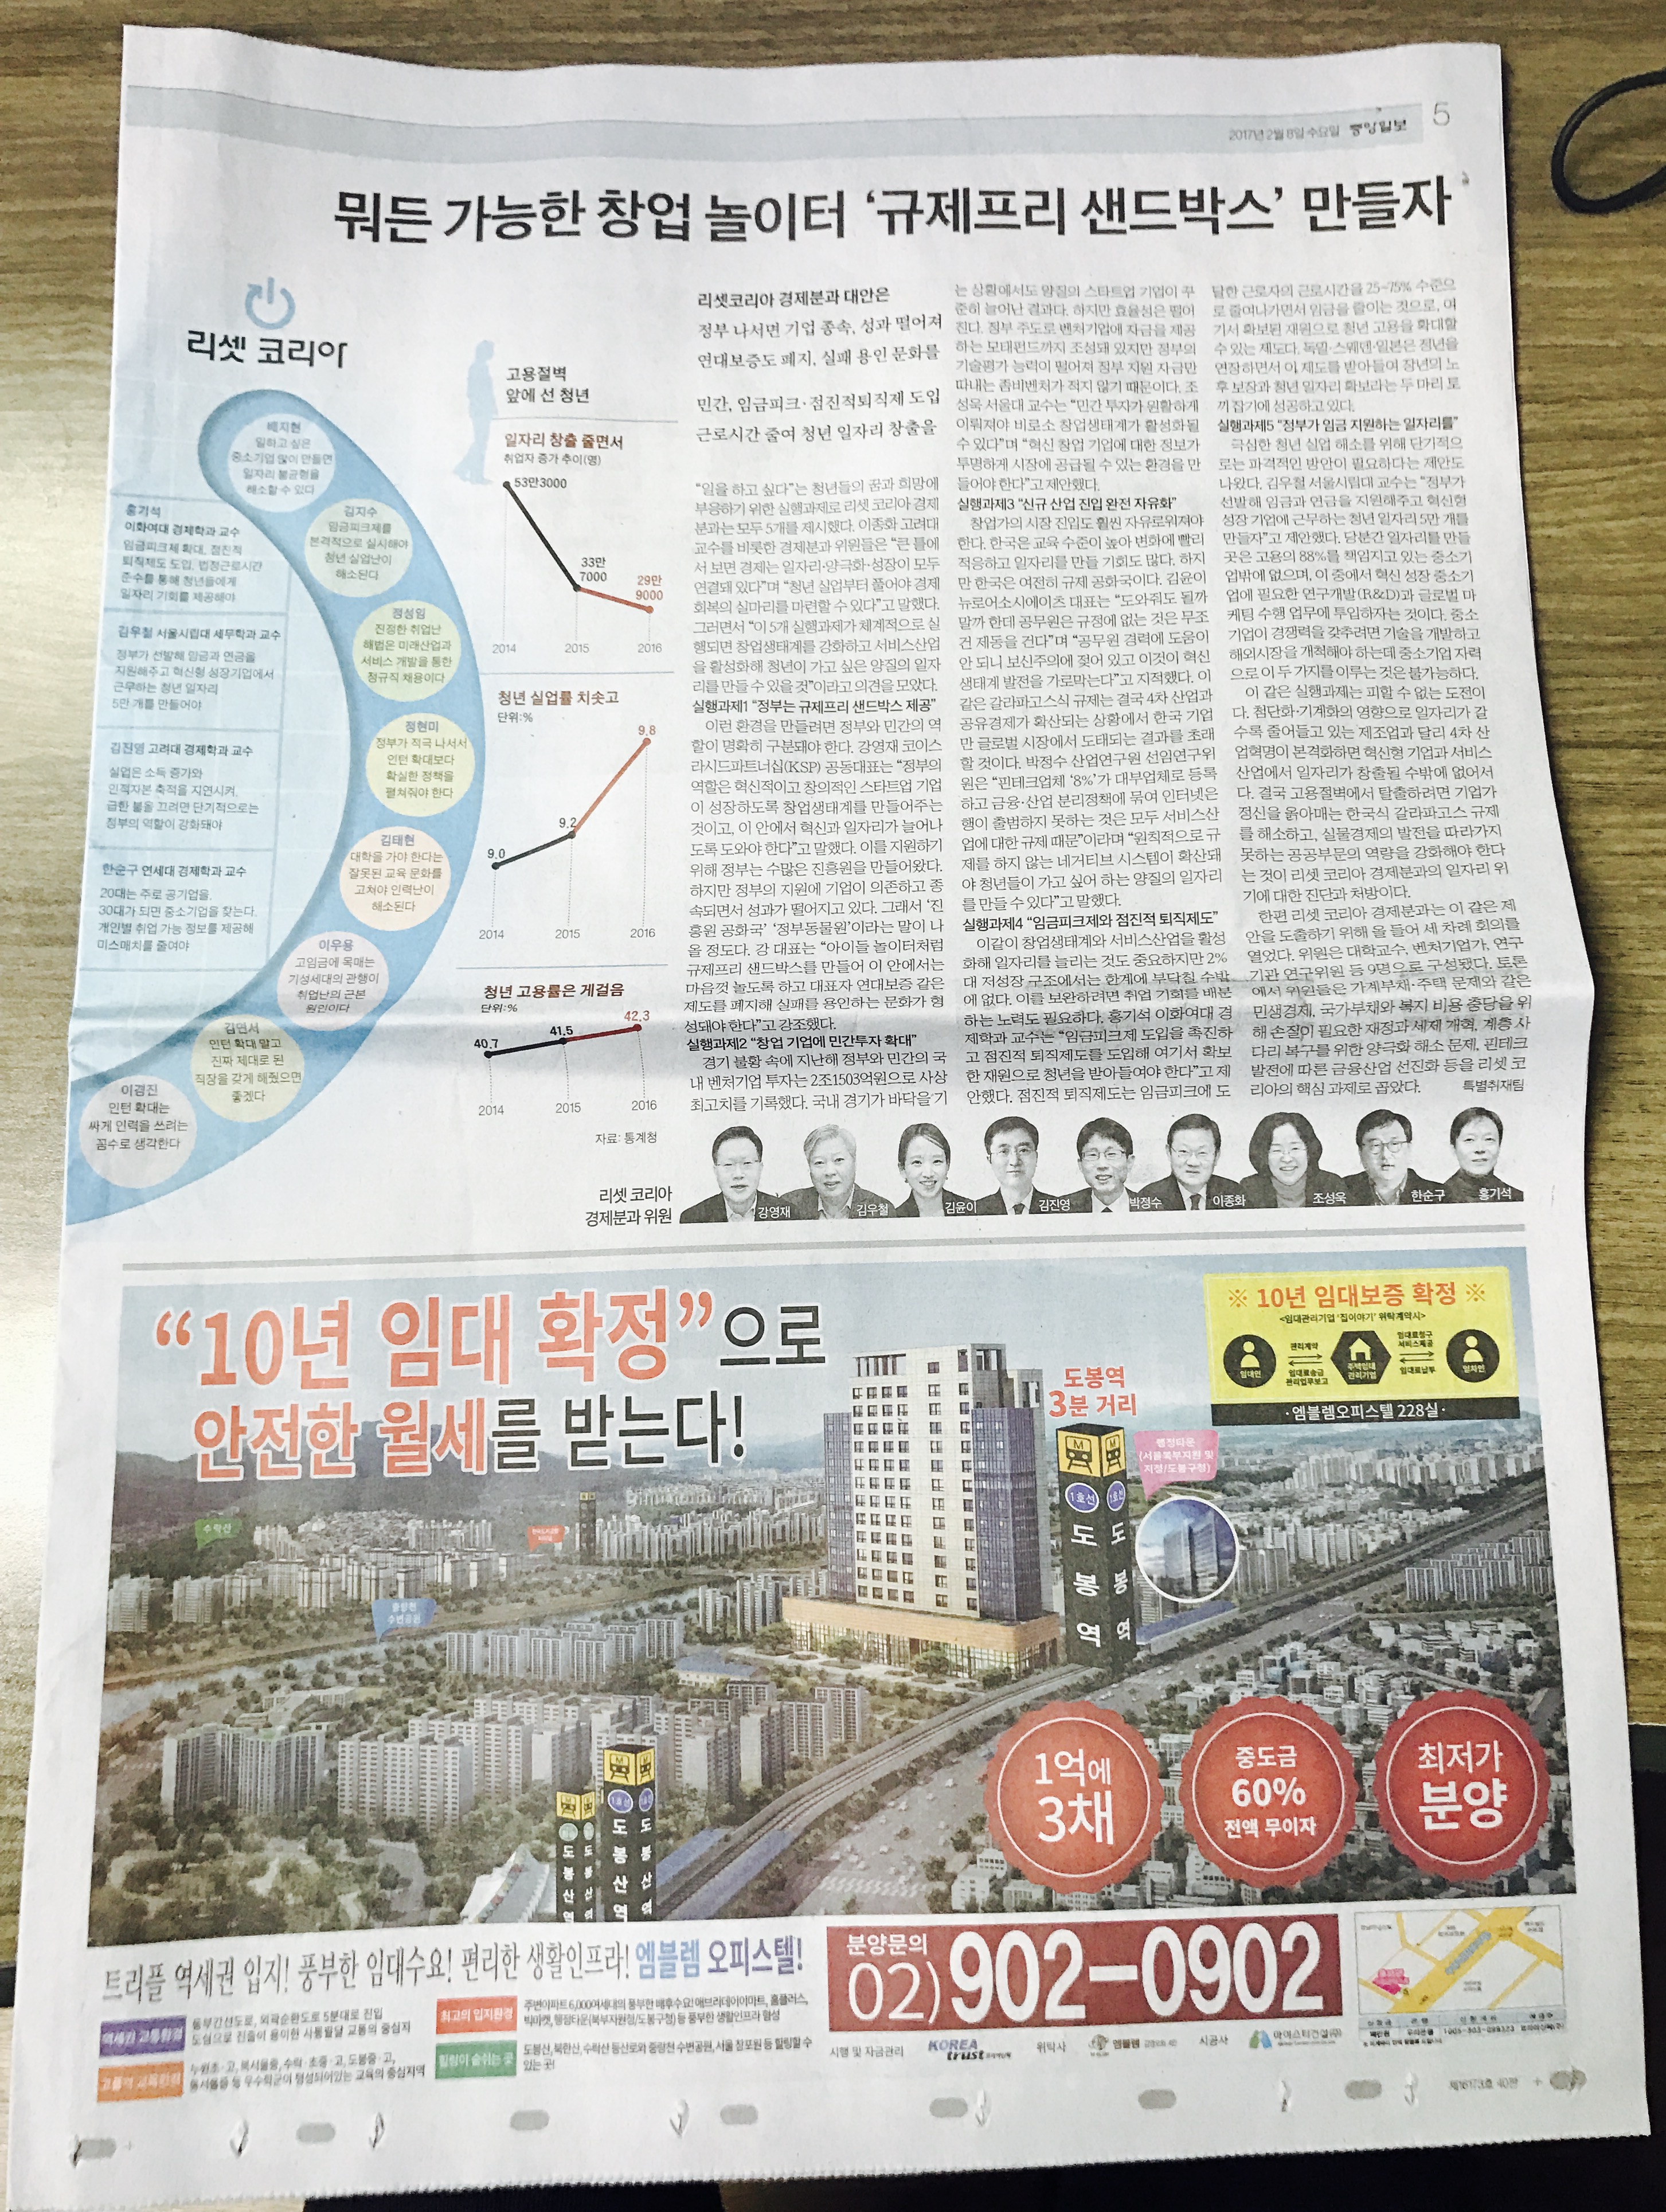 2월 8일 중앙일보 5 엠블렘 오피스텔 (5단통).jpg